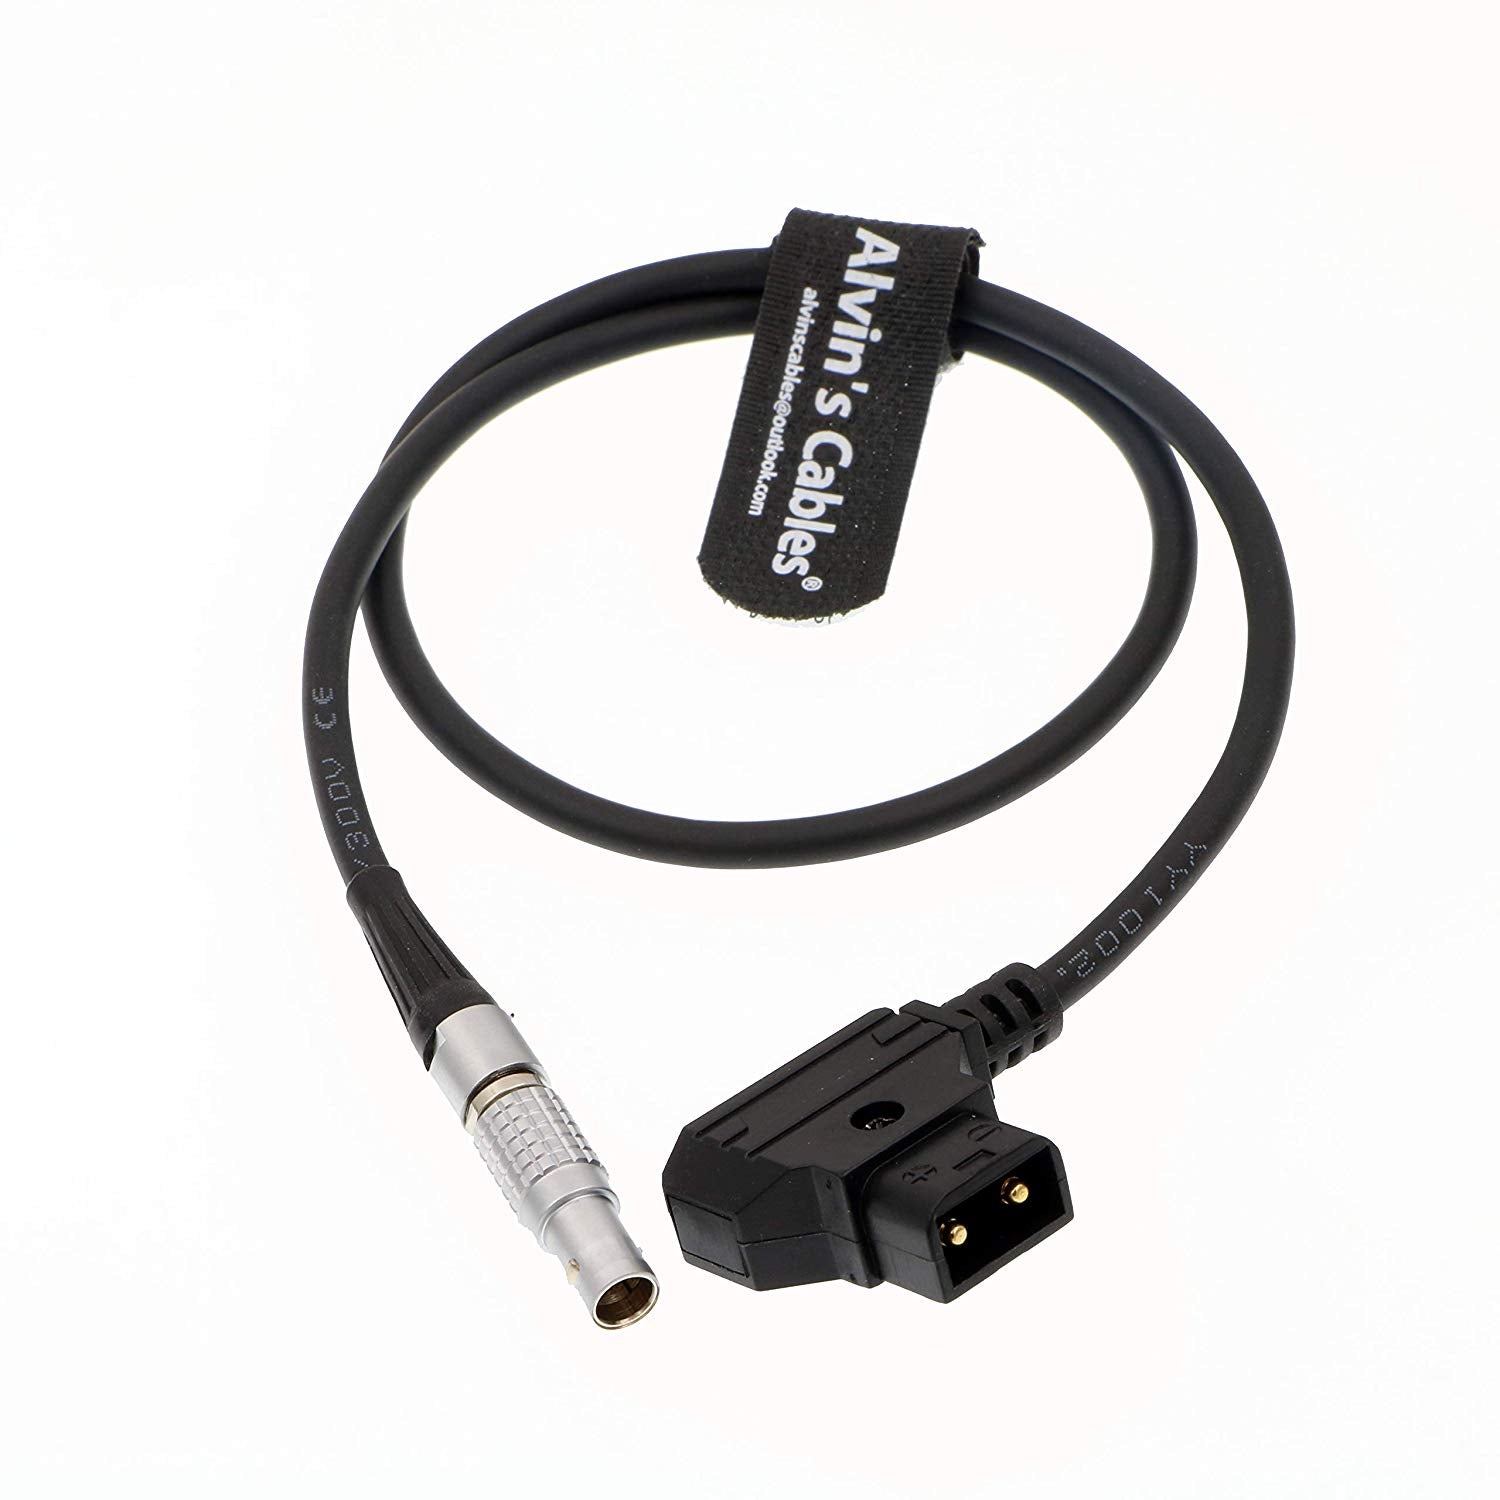 Alvin's Cables Motorstromversorgungskabel für DJI Follow Focus System FGG 0B 6 Pin Stecker auf D Tap